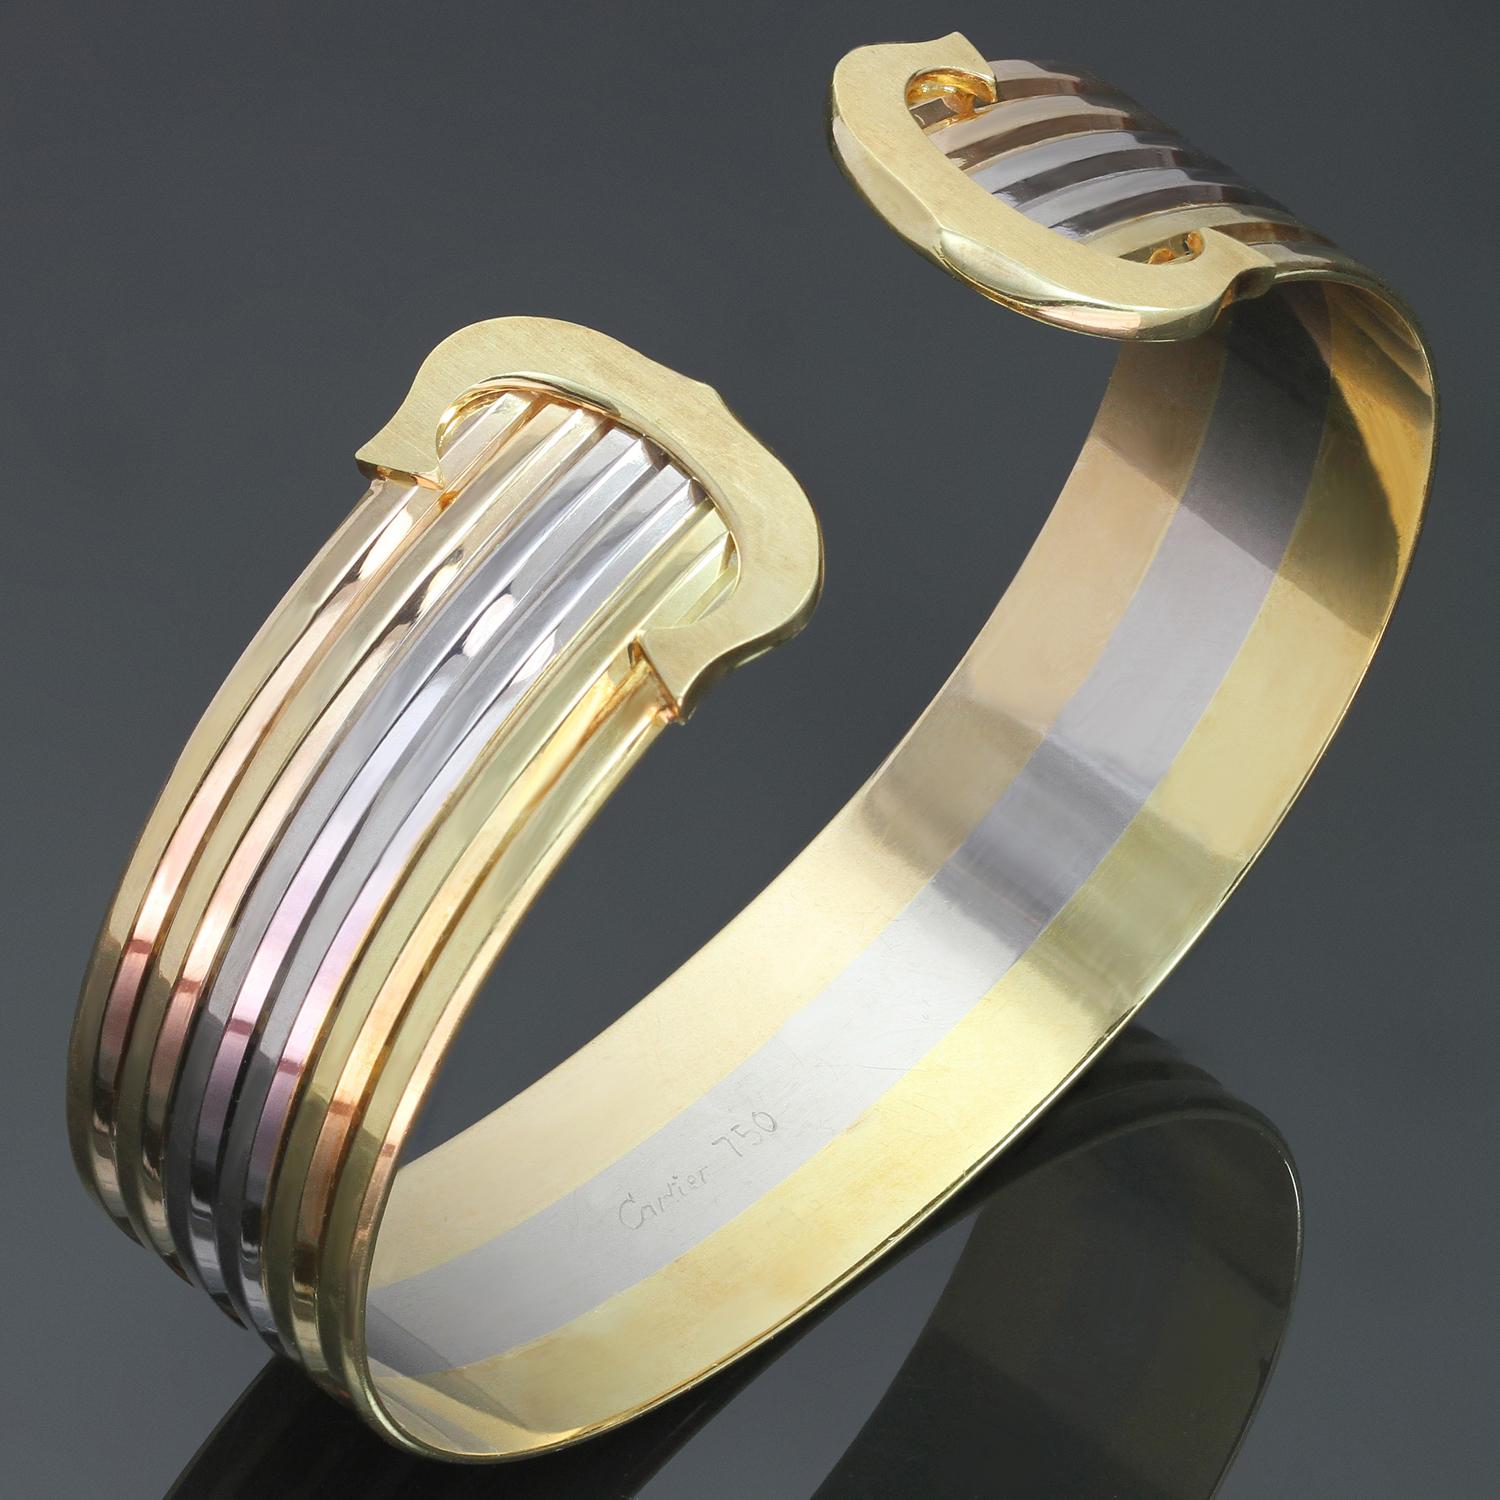 Ce bracelet classique de Cartier présente un design à trois rangs en or jaune, blanc et rose 18 carats, complété par le logo emblématique Double C en or jaune. Les poinçons sont faibles mais visibles. Fabriquées en France en 1997. Dimensions : 0,74